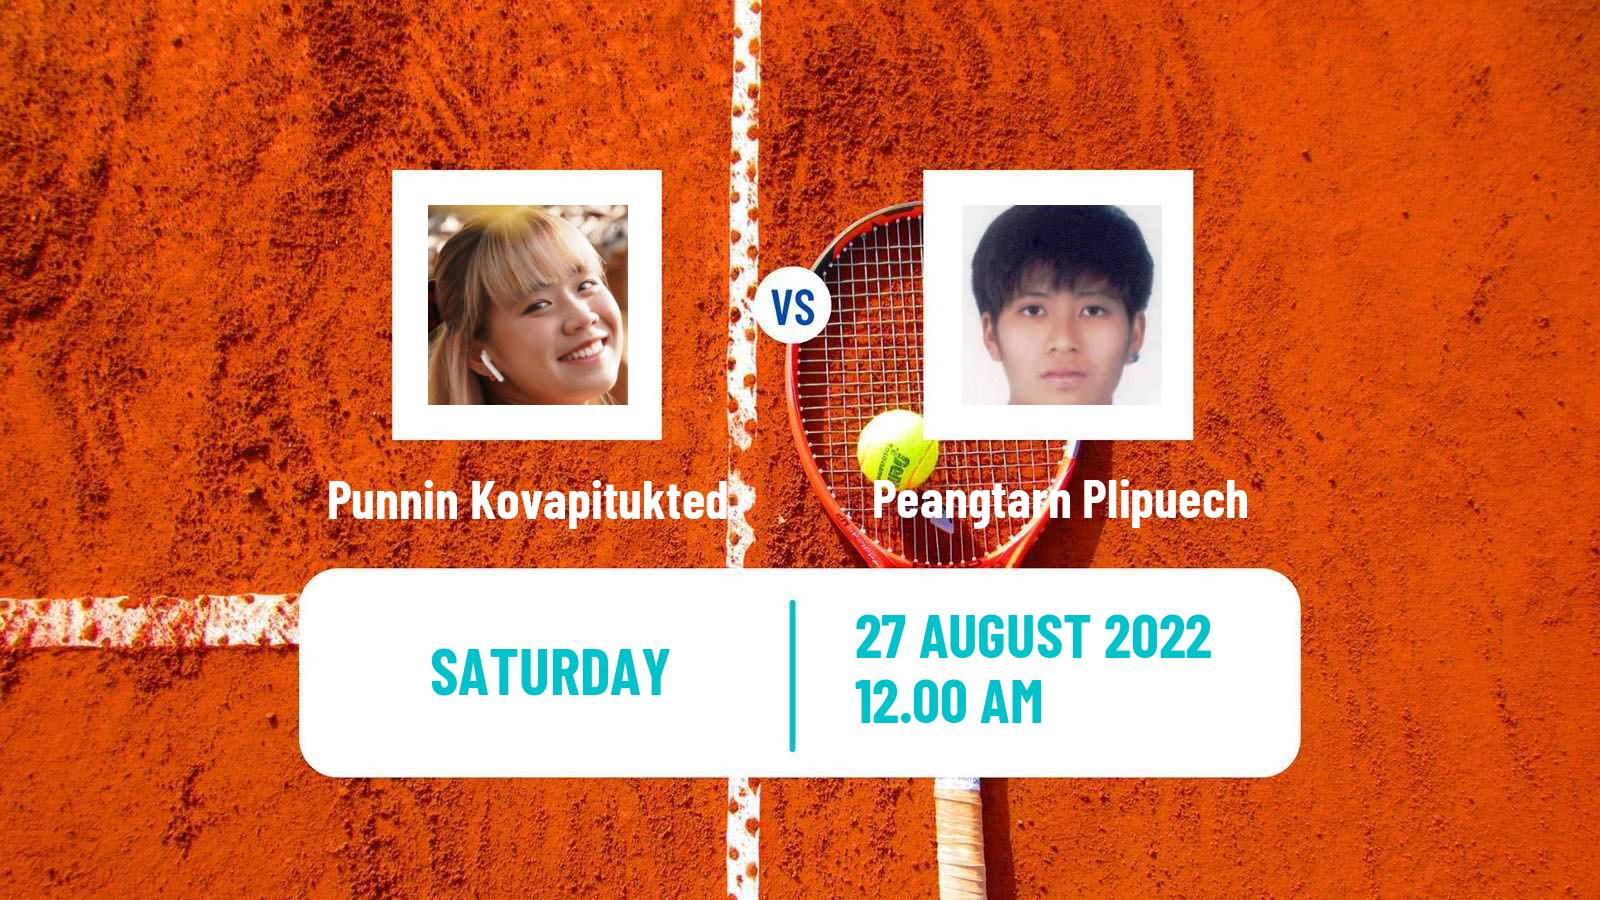 Tennis ITF Tournaments Punnin Kovapitukted - Peangtarn Plipuech